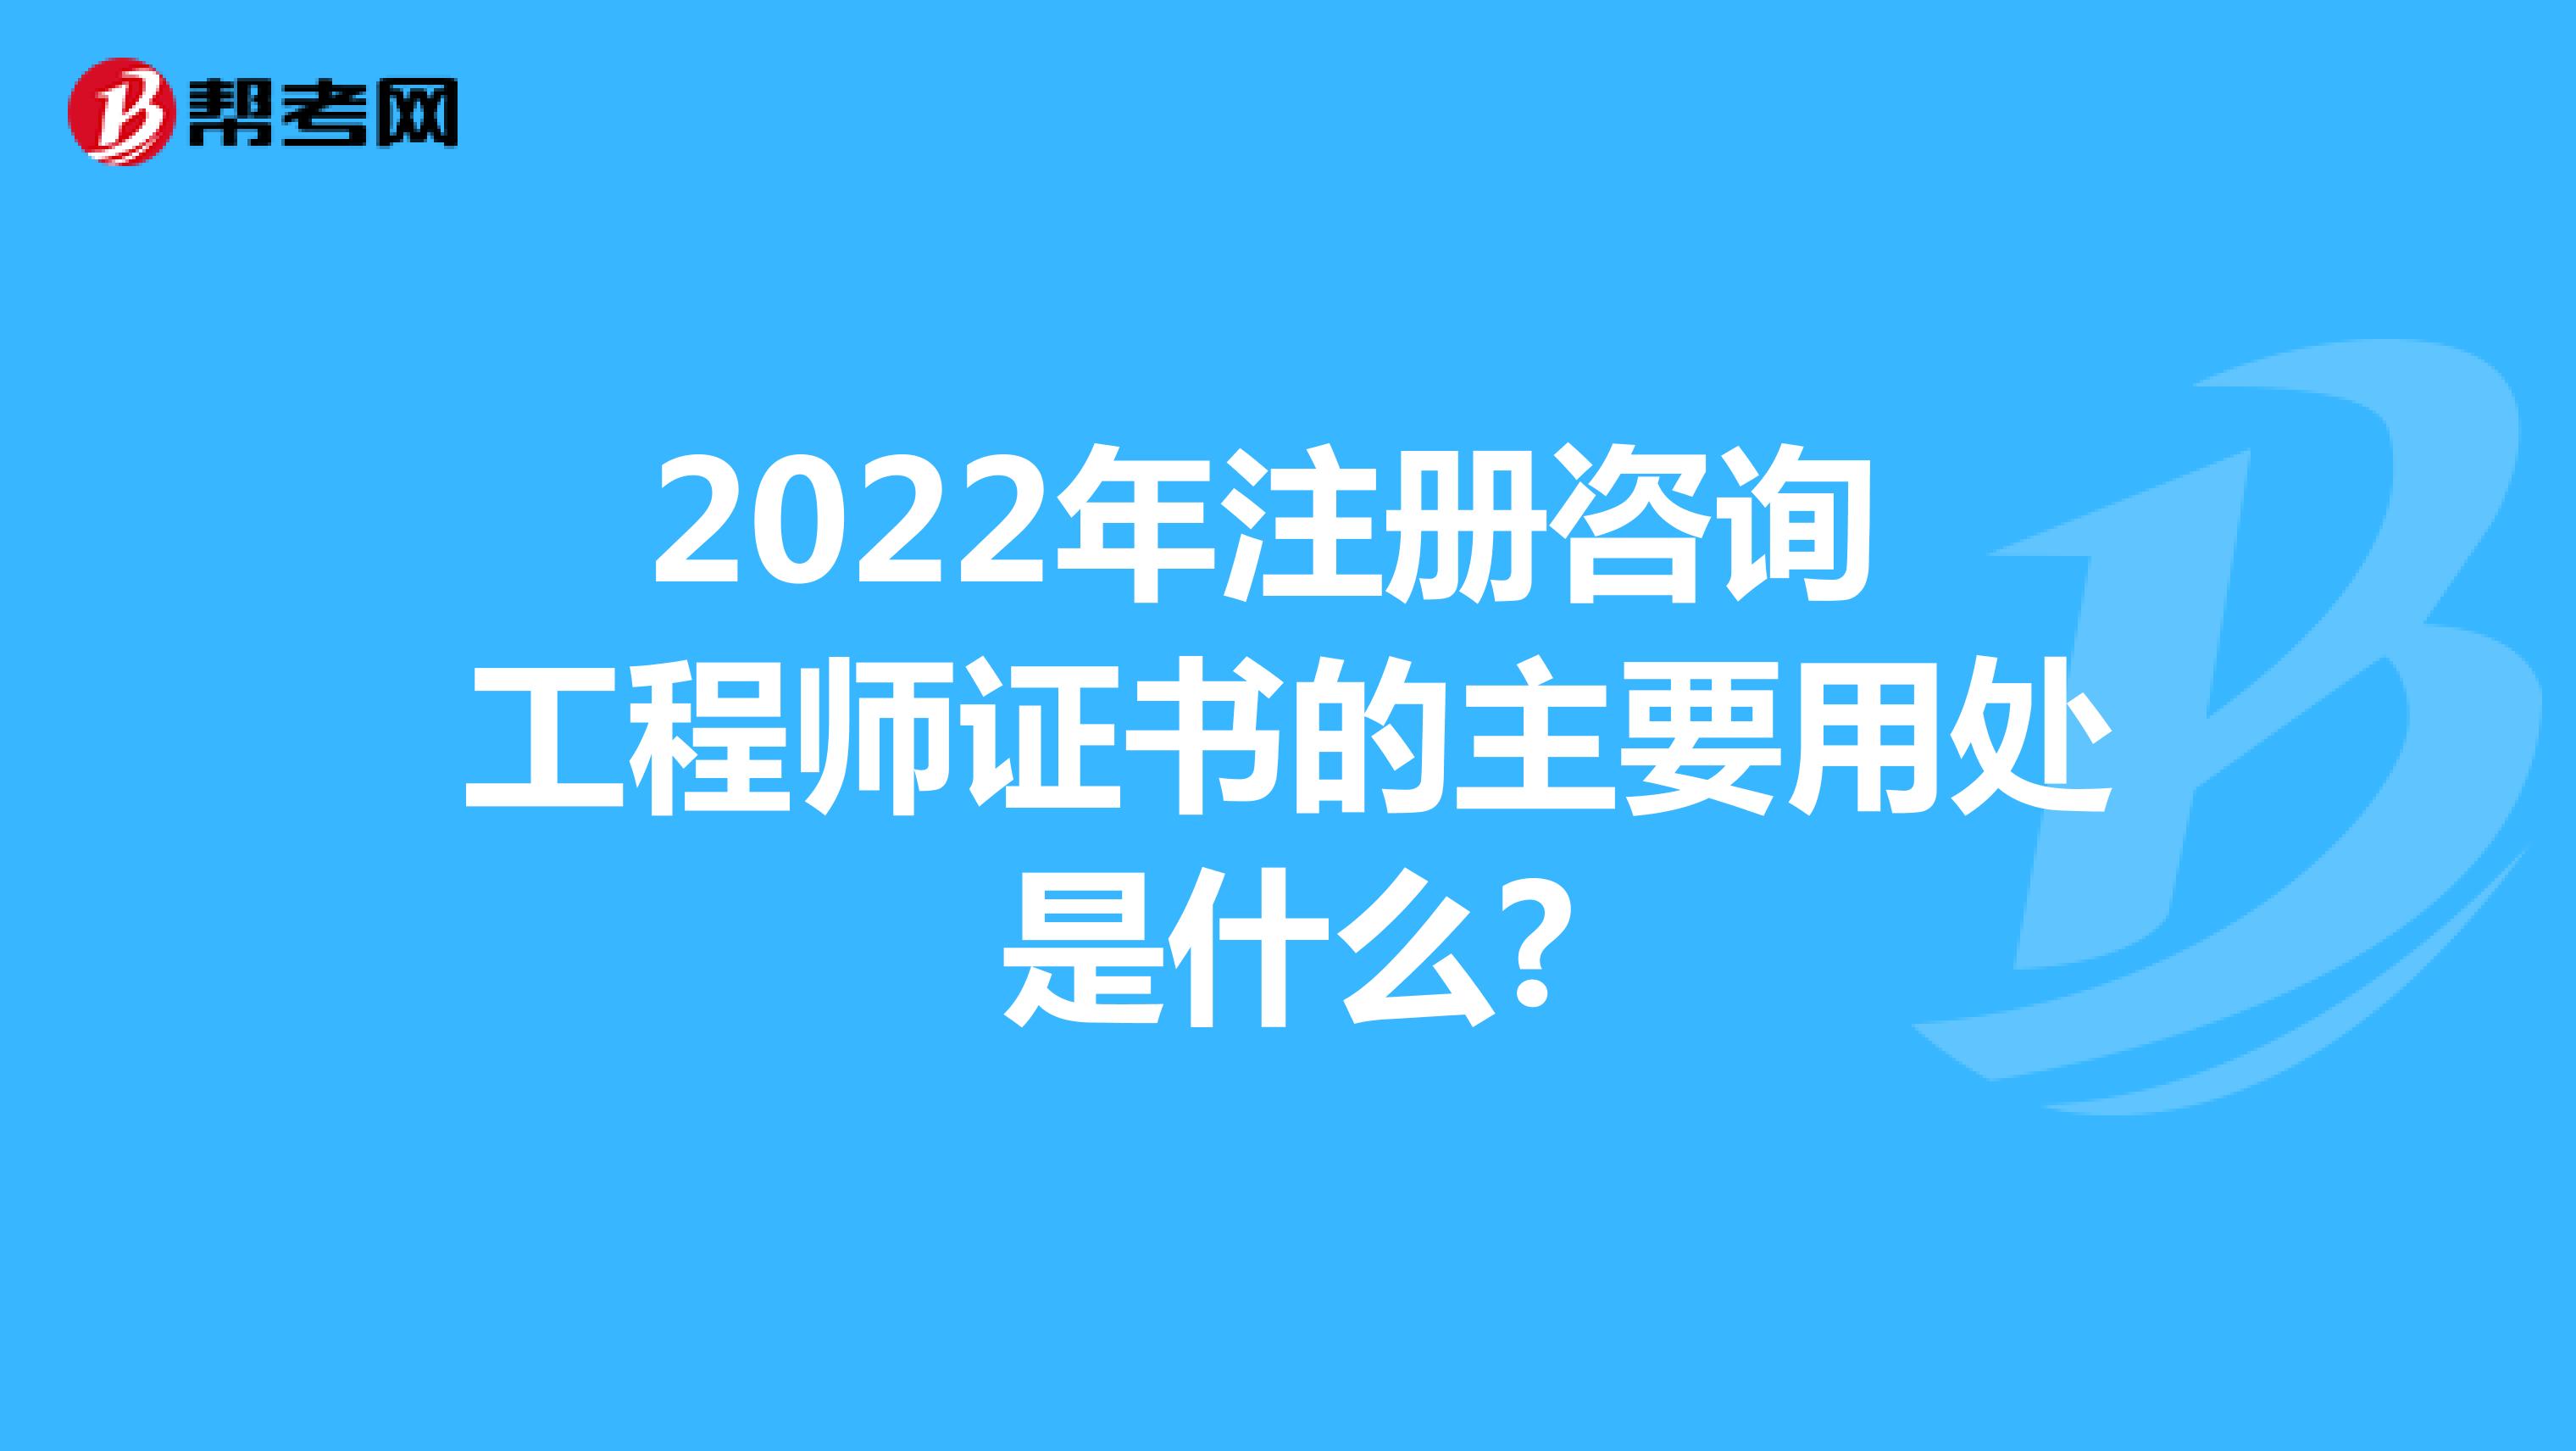 2022年注册咨询工程师证书的主要用处是什么?